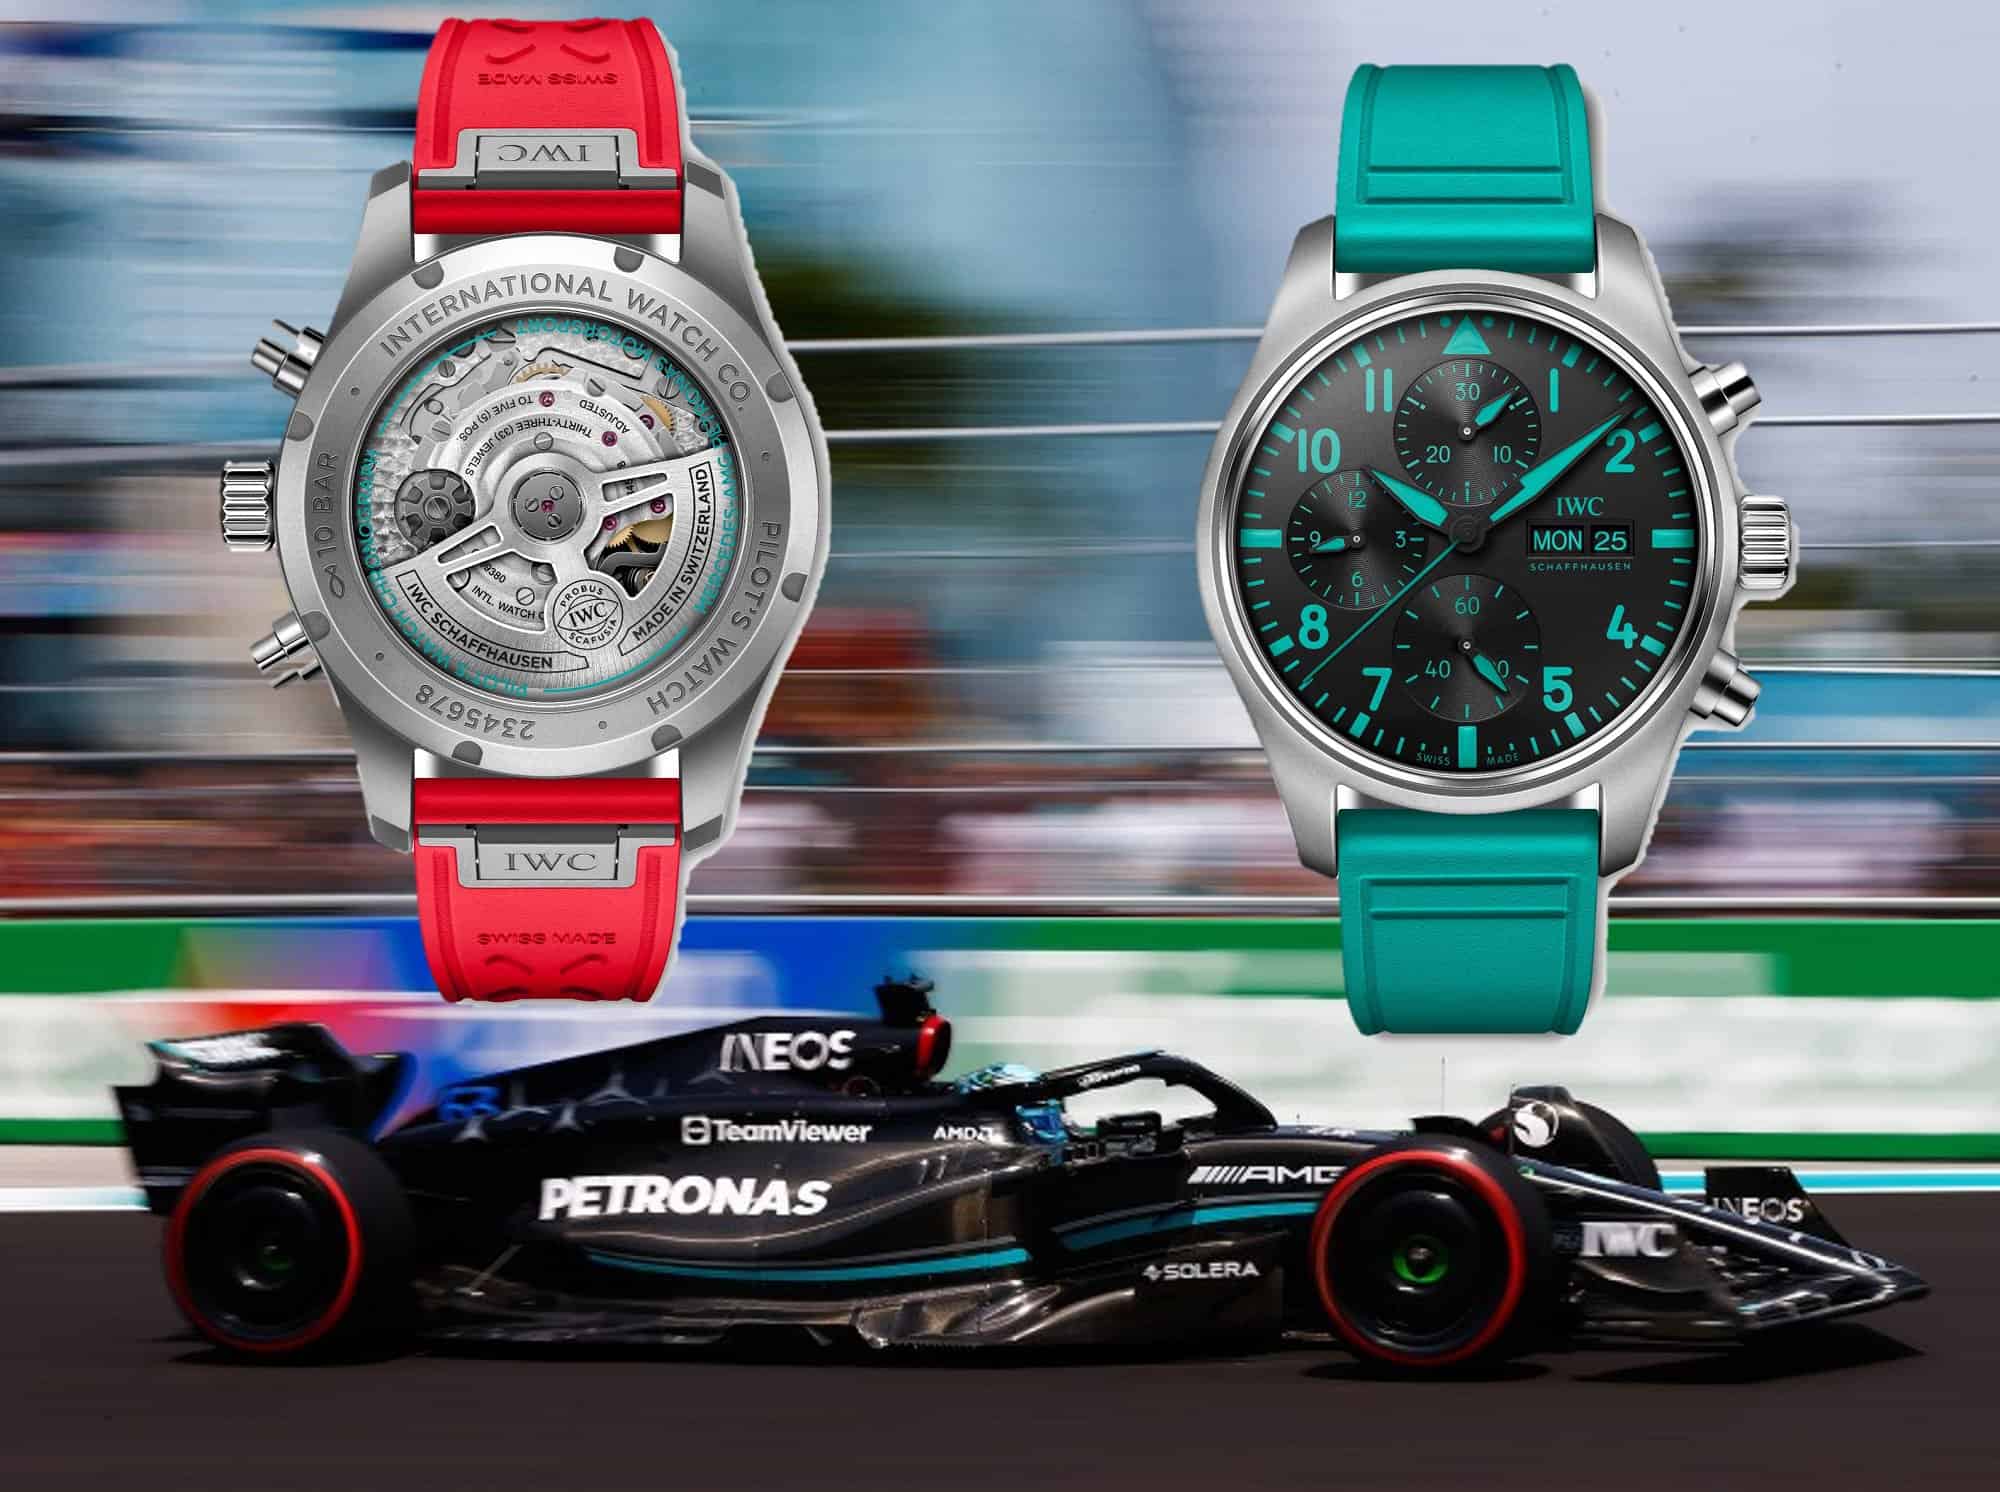 Uhren der Formel 1 Fahrer Diese Uhren tragen Verstappen, Hamilton, Alonso and Co